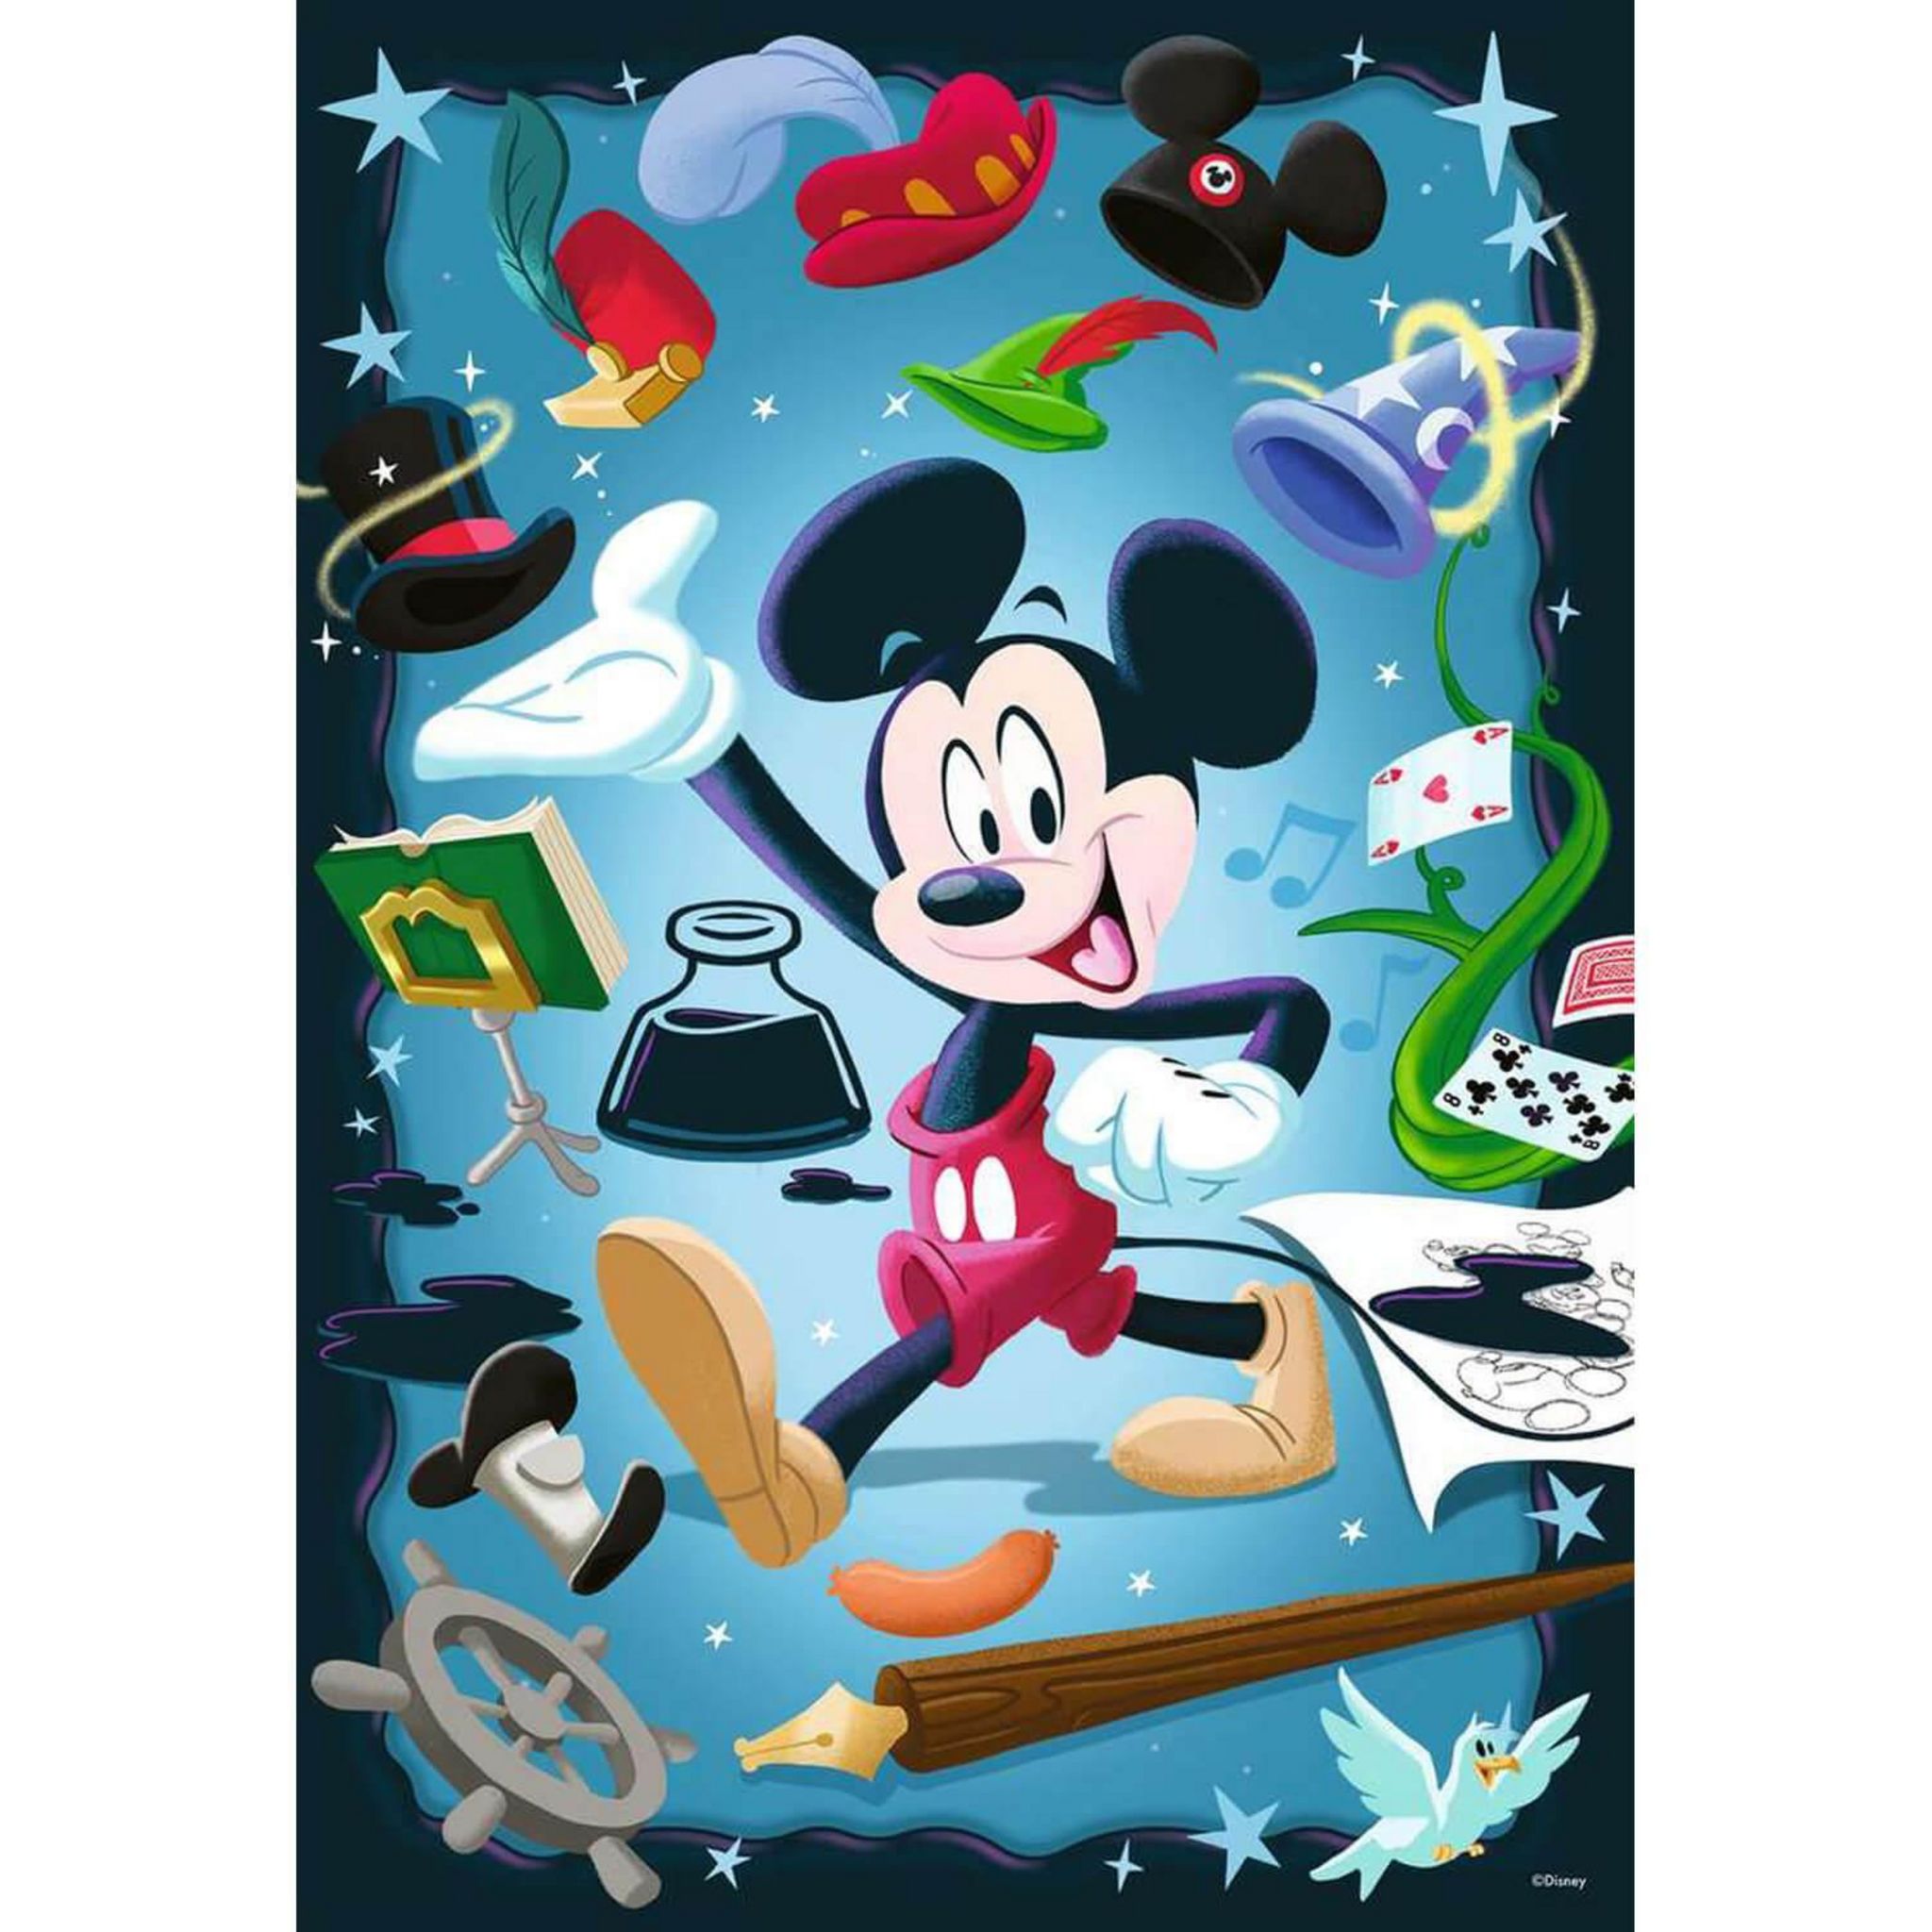 Puzzle 1000 pièces : Le merveilleux monde de Disney - Educa - Rue